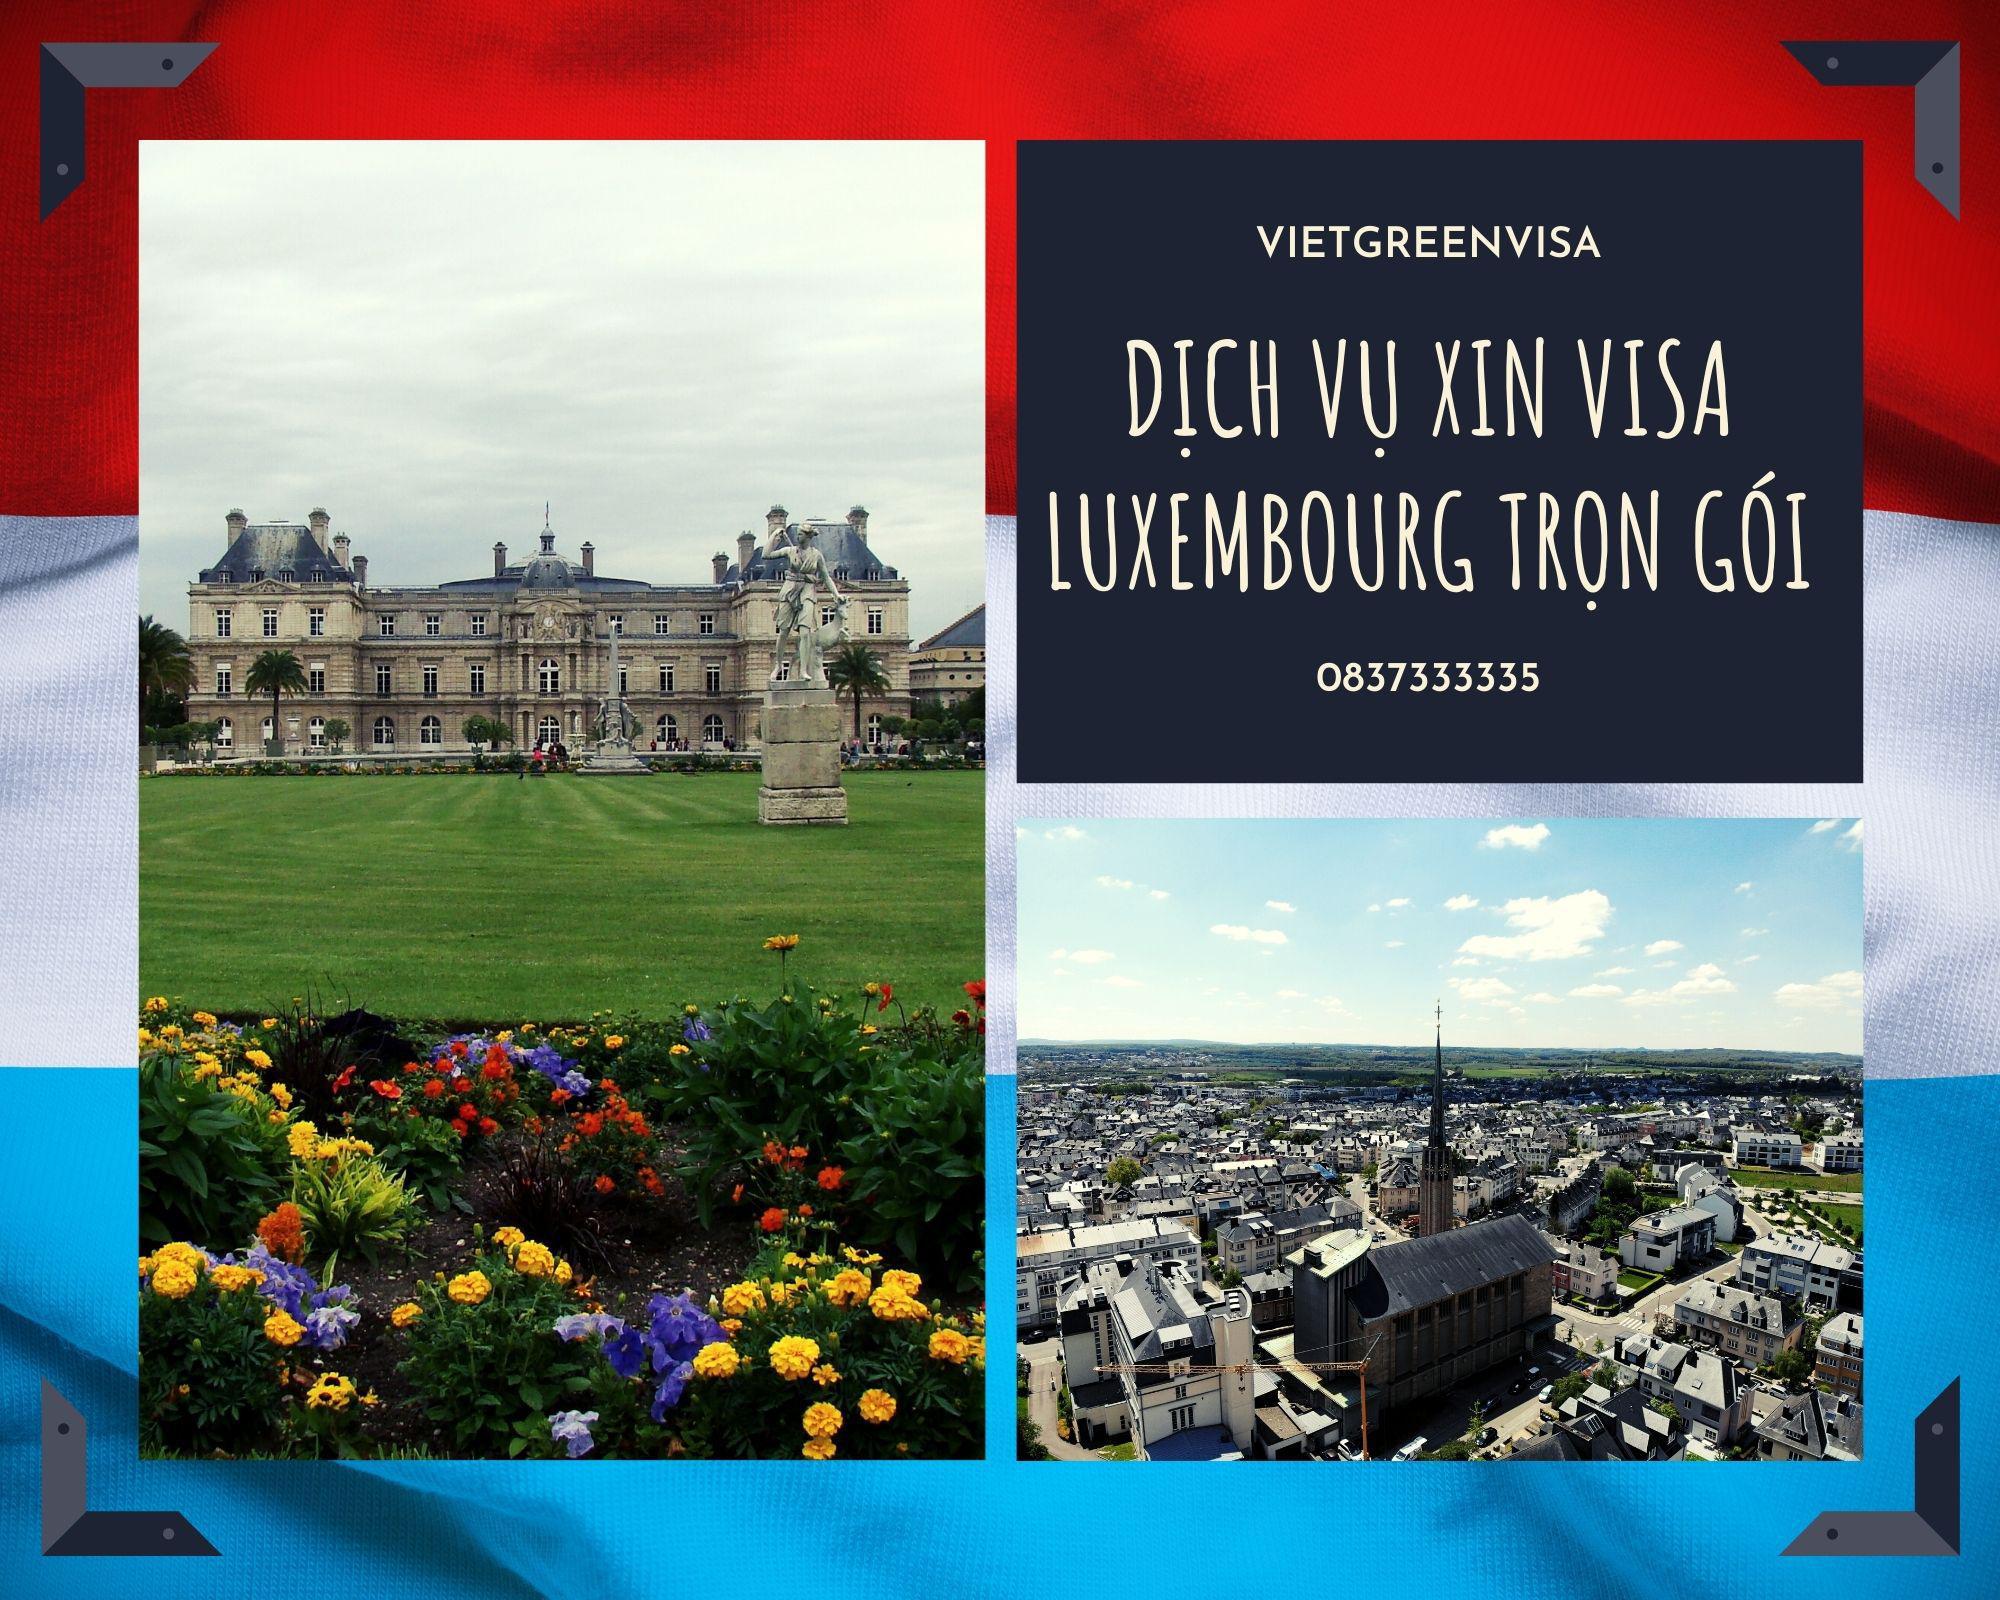 Hỗ trợ xin visa du lịch Luxembourg trọn gói